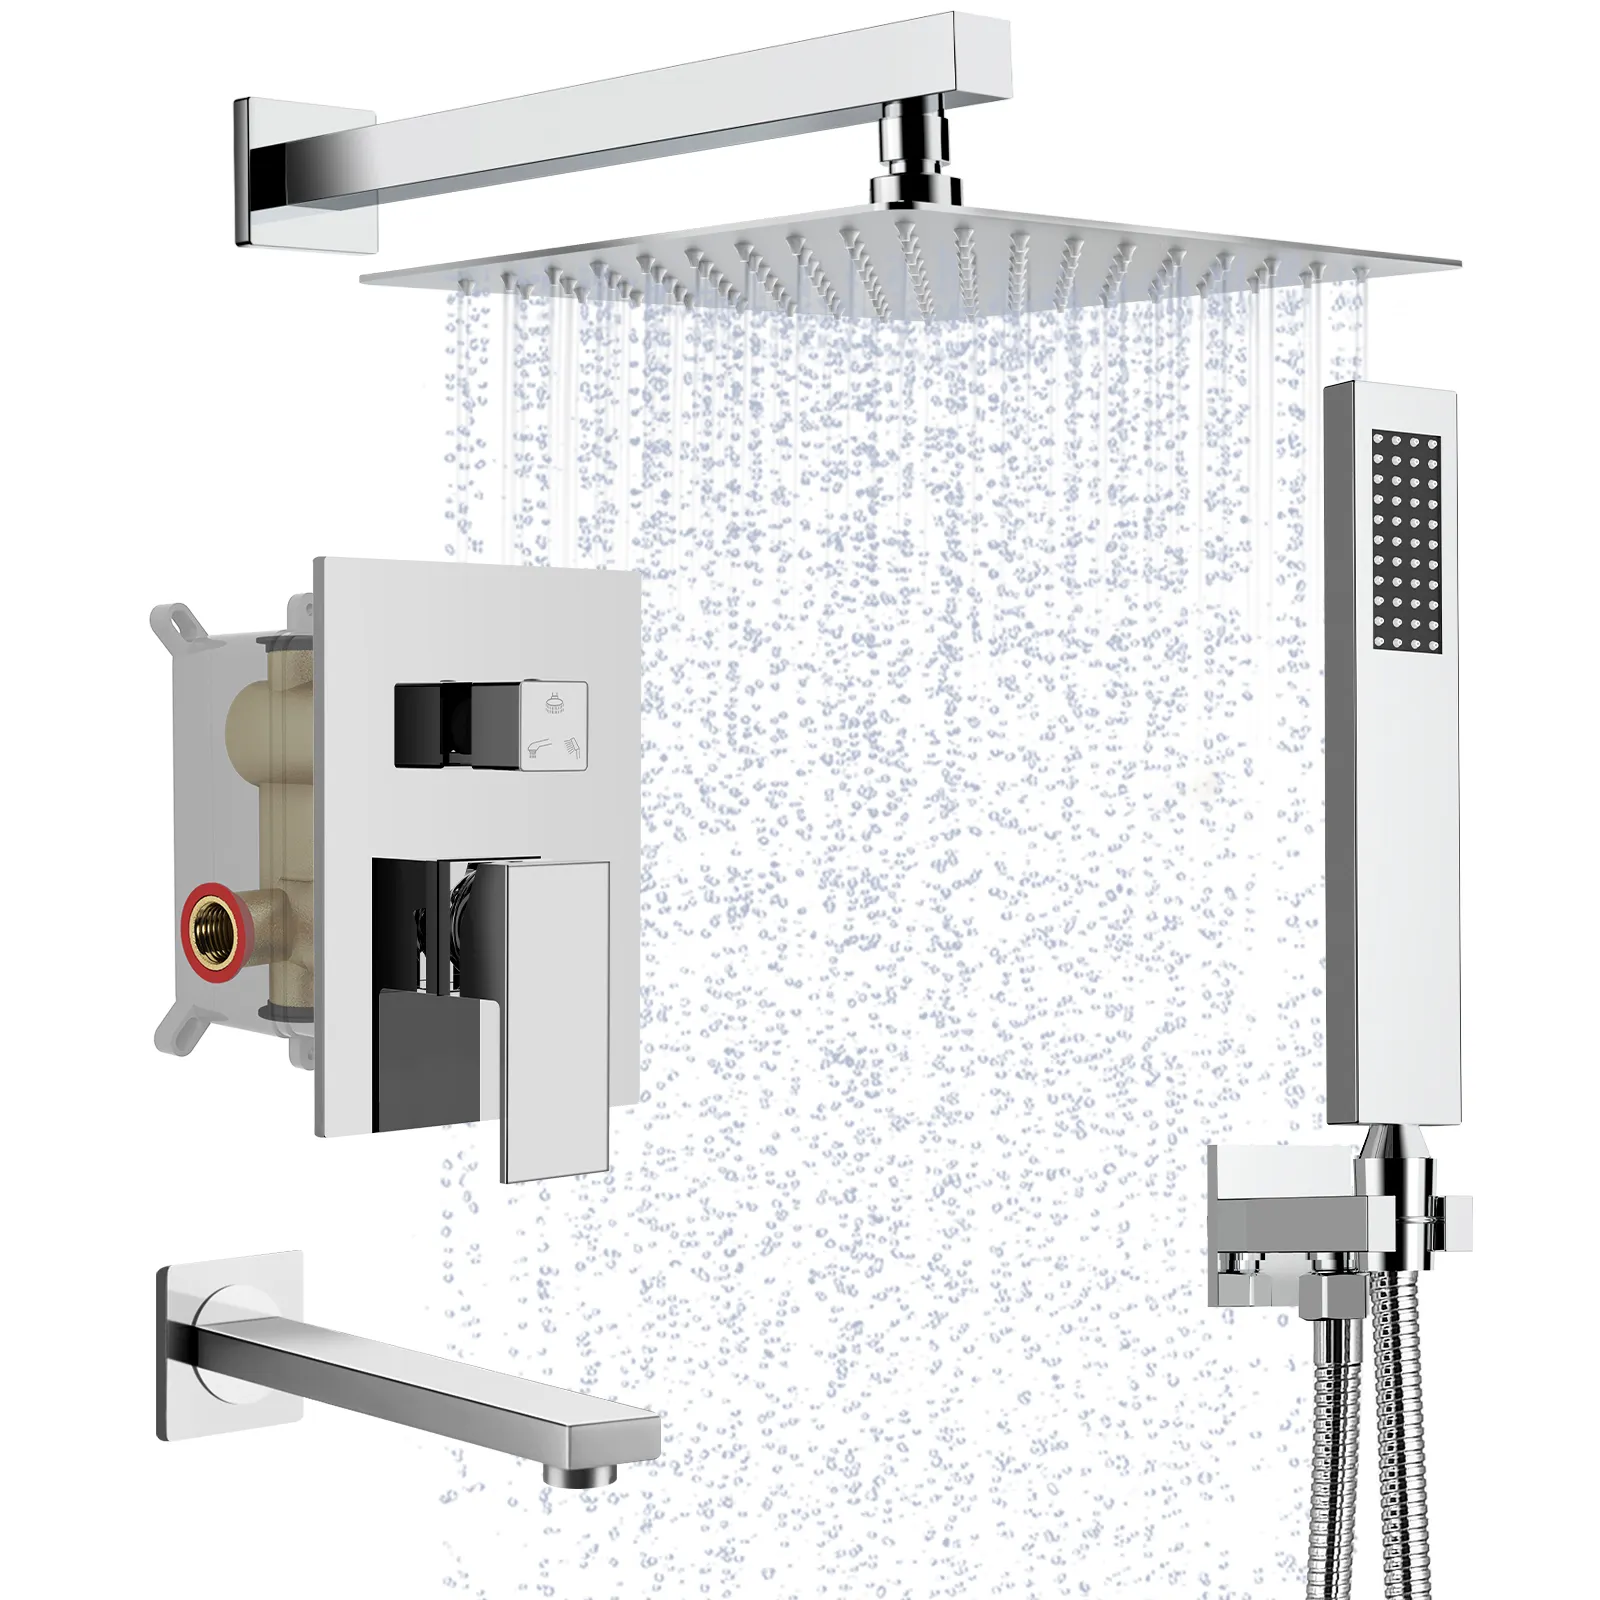 럭셔리 대형 LED 온도 조절 샤워 수도꼭지 세트 솔질 골드 음악 목욕 샤워 시스템 세트 샤워 헤드